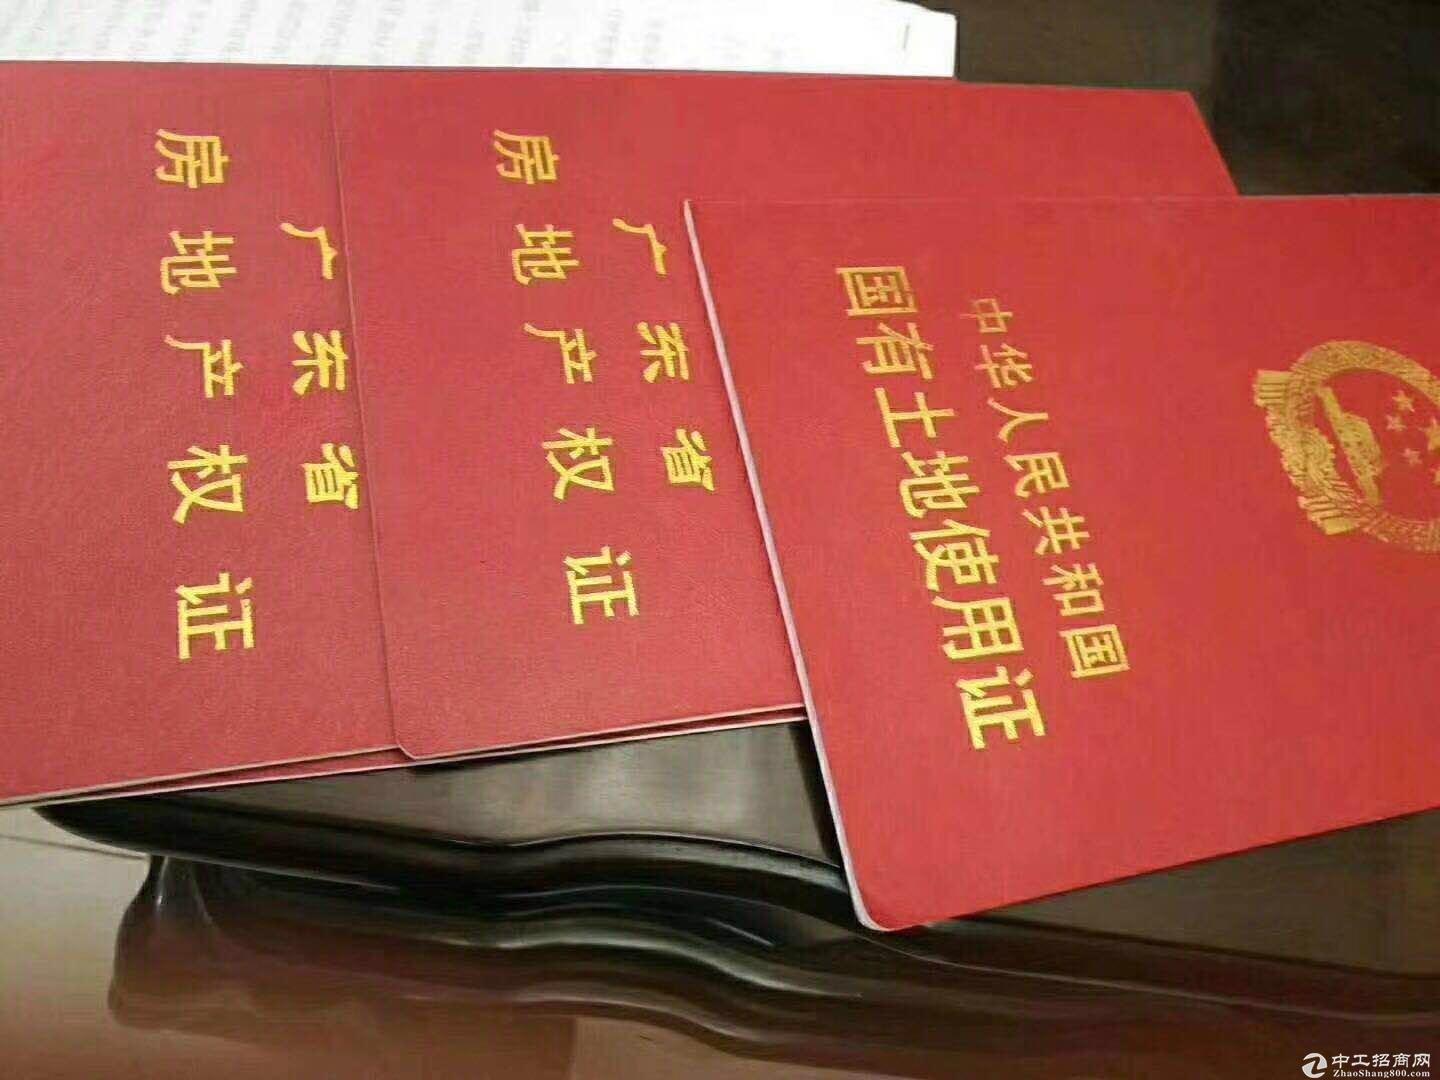 深圳 东莞 惠州 土地 厂房 招商 大小可分割产权清晰证件齐全